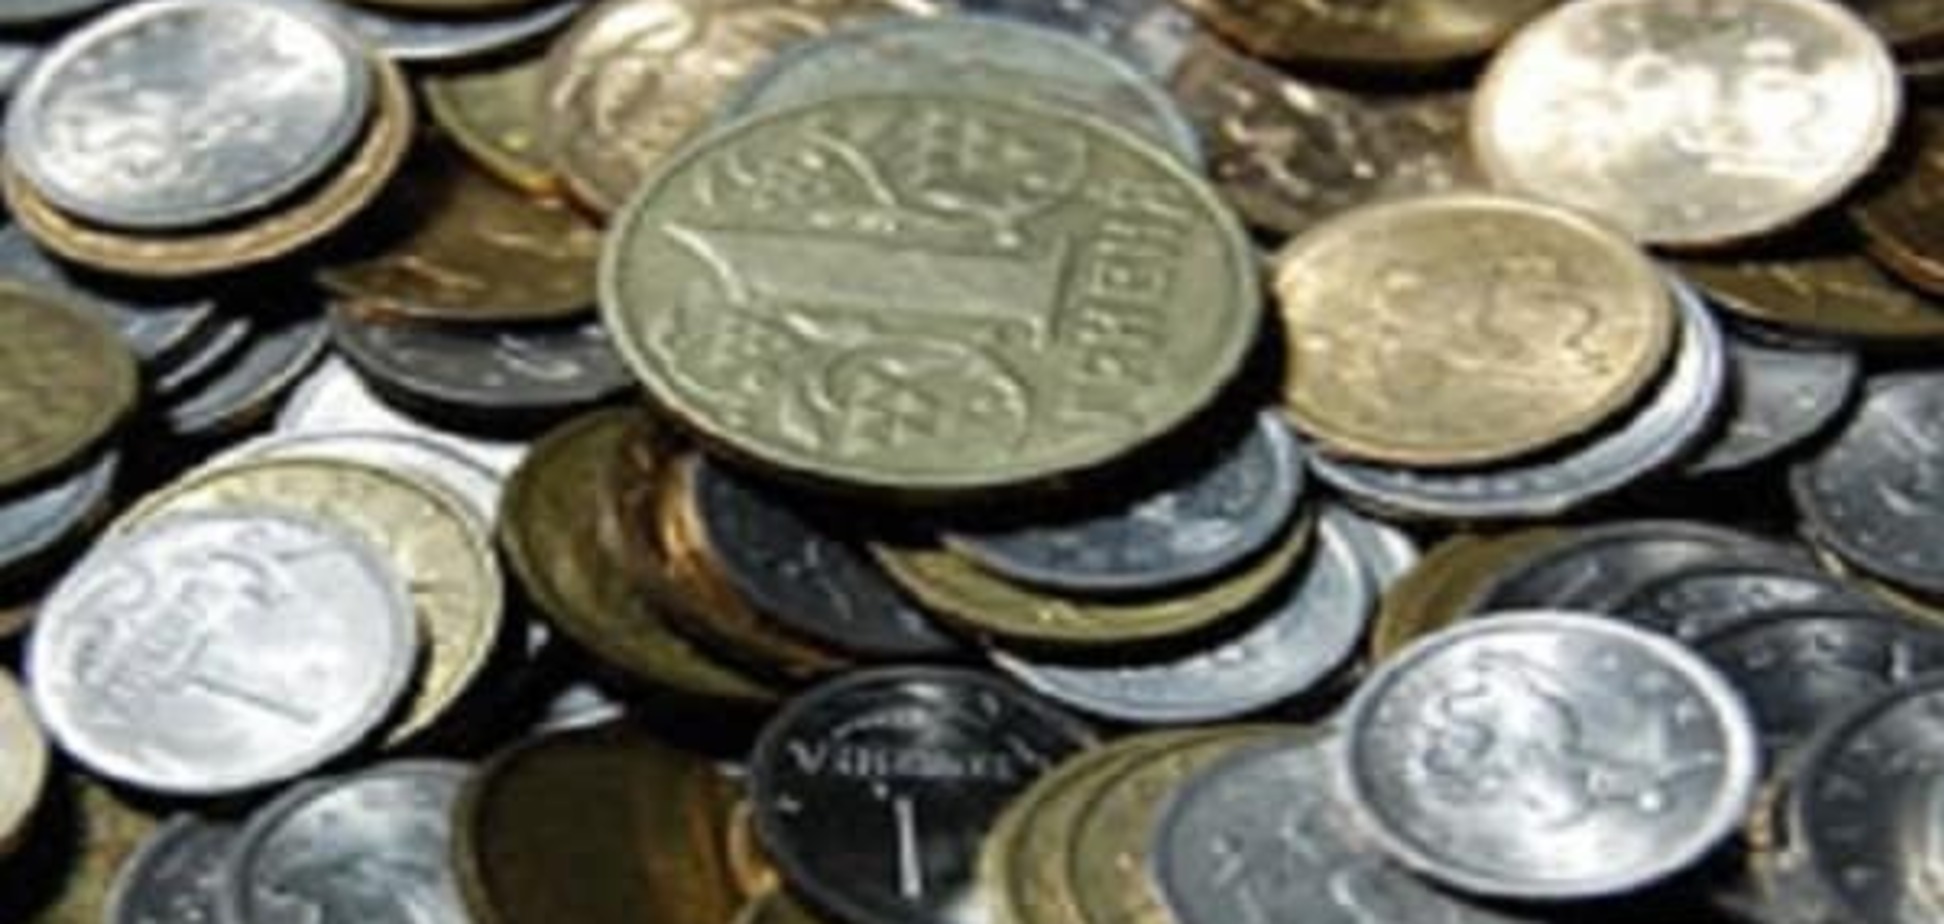 НБУ готовит сюрприз: в Украине появятся новые монеты - СМИ